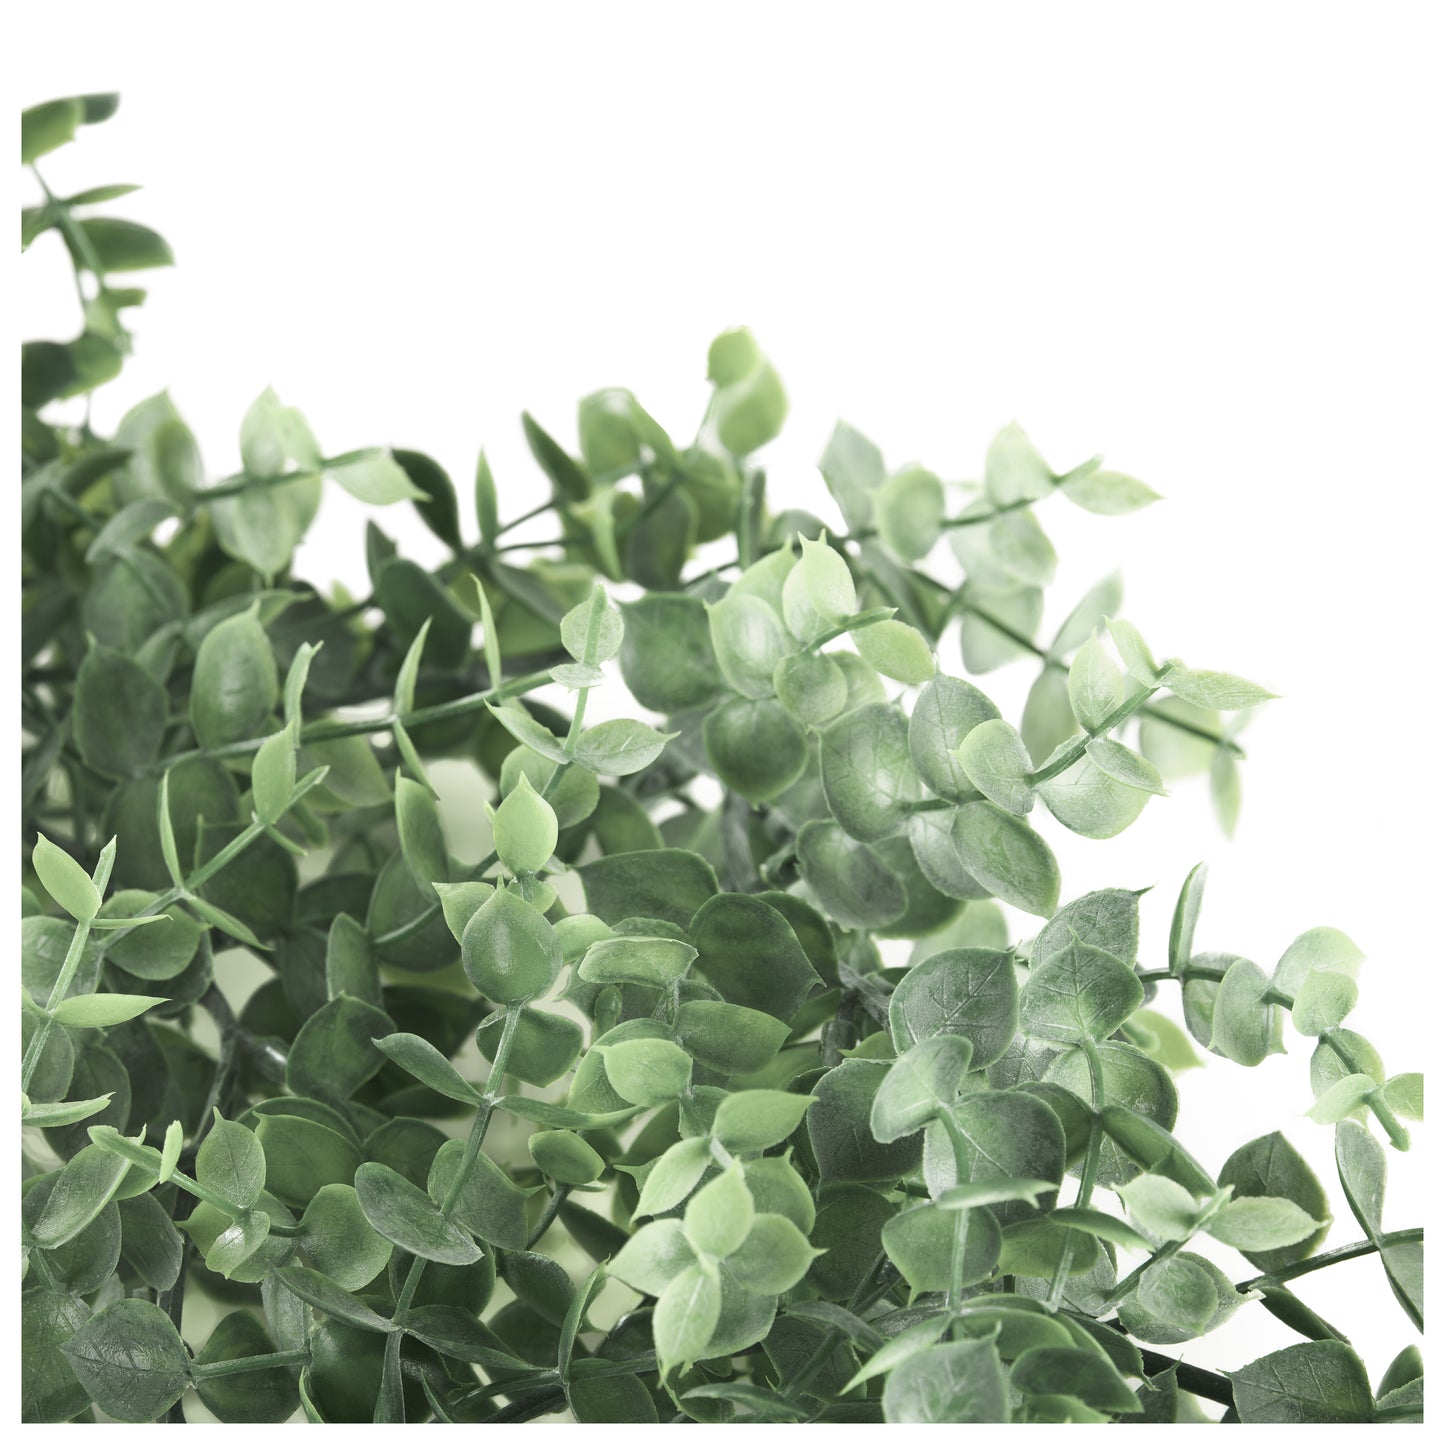 Dichtes Büschel kleiner grau-grüner Kunstpflanzenblätter auf weißem Hintergrund.